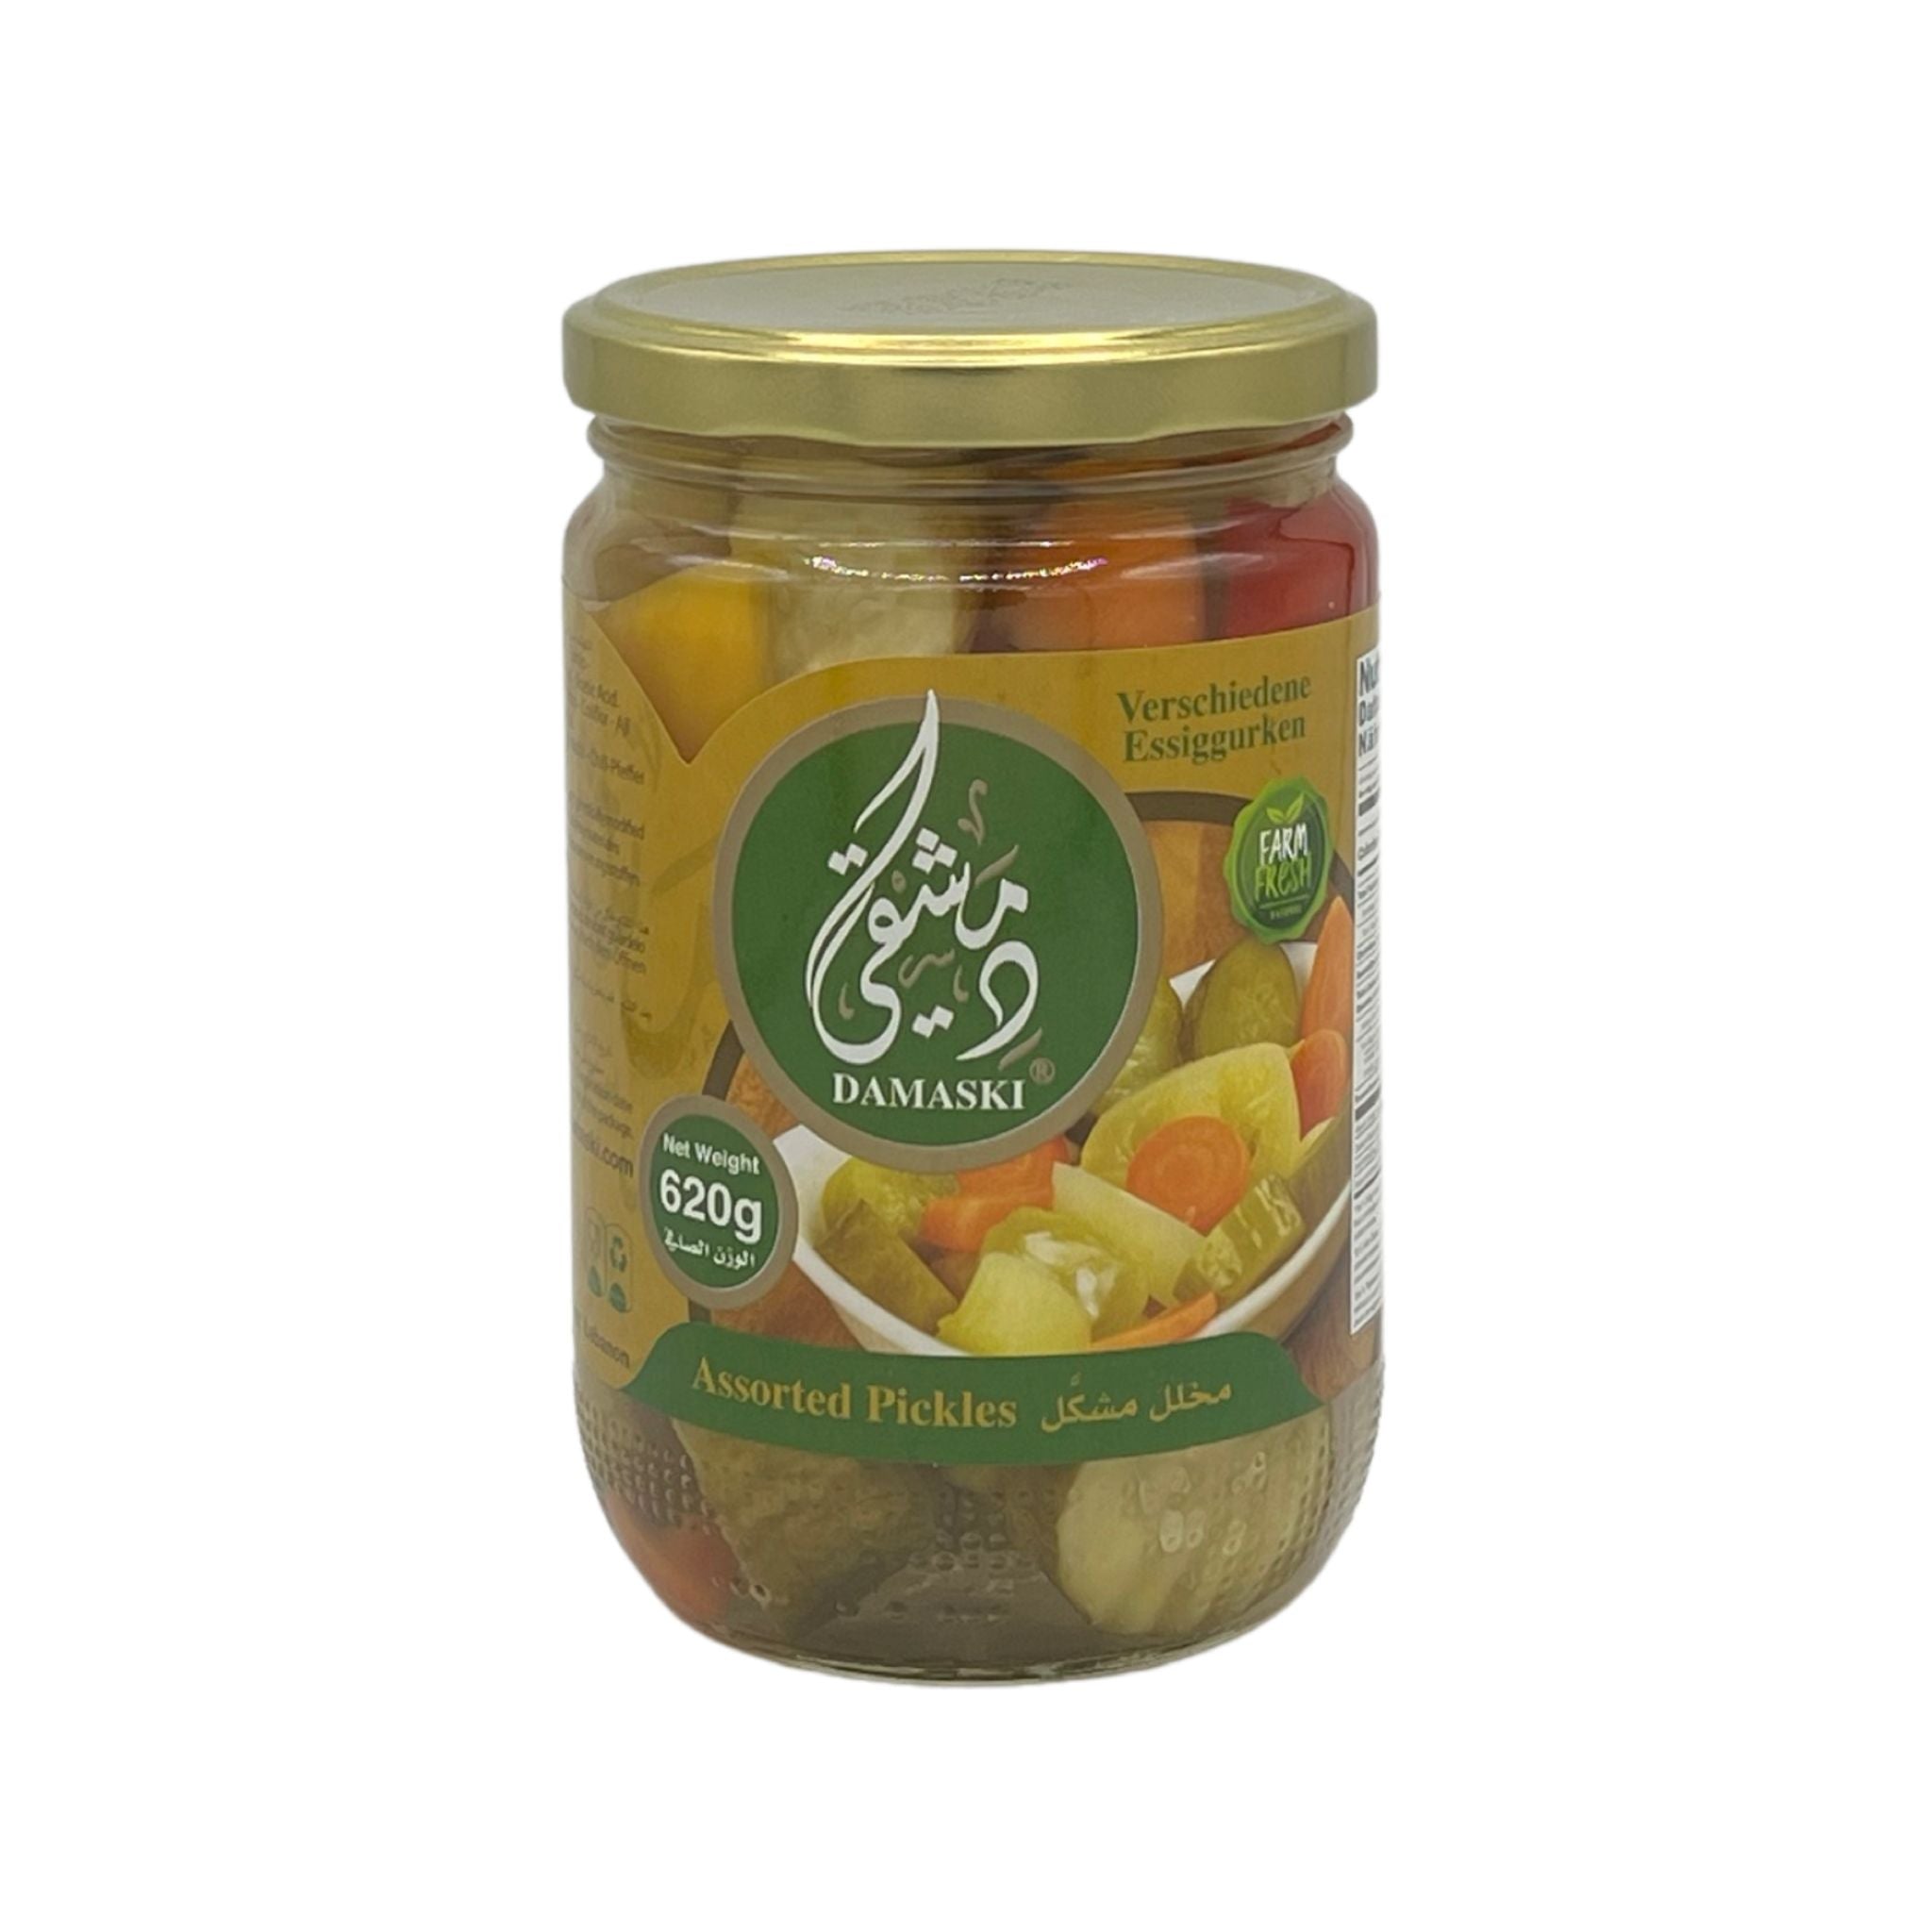 Damaski Assorted Pickles 620g